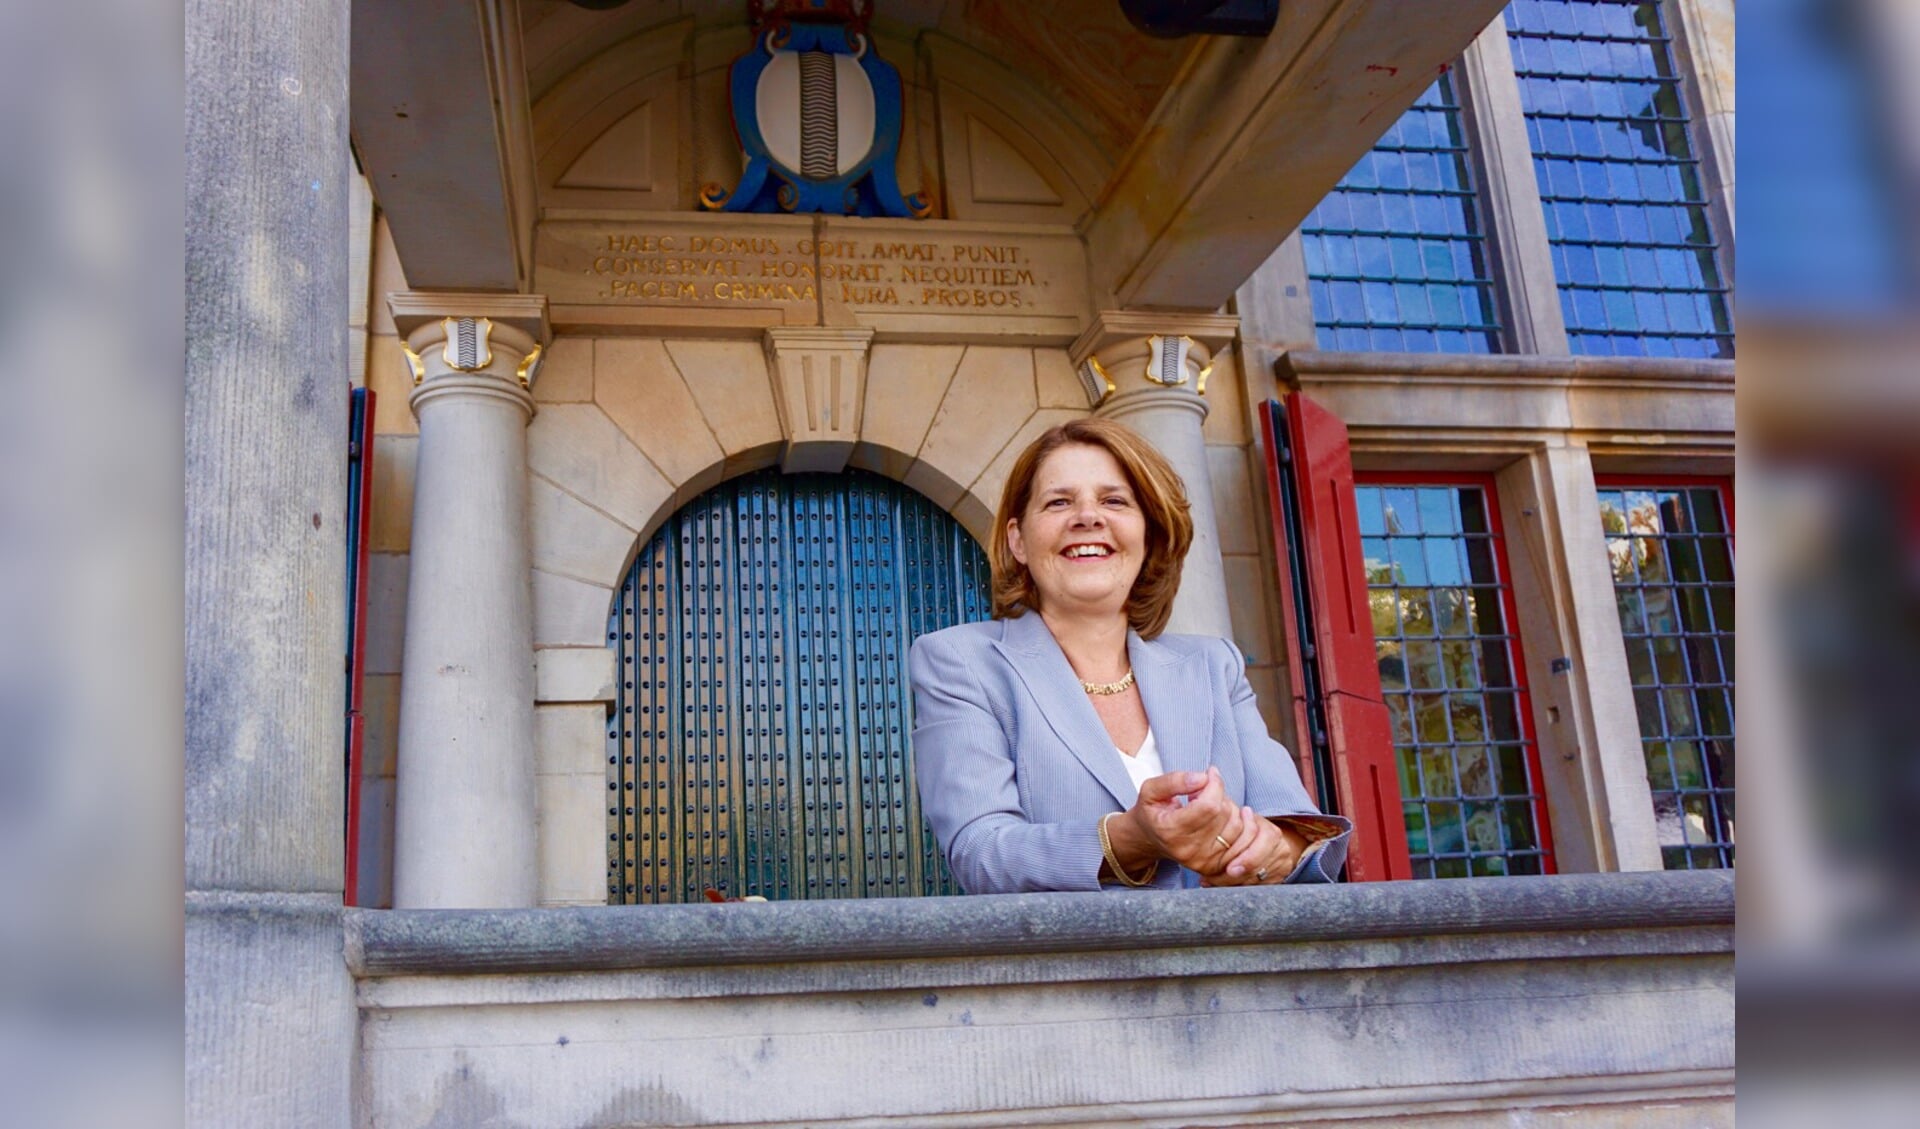 Marja van Bijsterveldt al even op het bordes van het stadhuis in Delft, waar zij vanaf aanstaande vrijdag als burgemeester de vergaderingen van de gemeenteraad zal voorzitten. (foto: Henk de Kat)